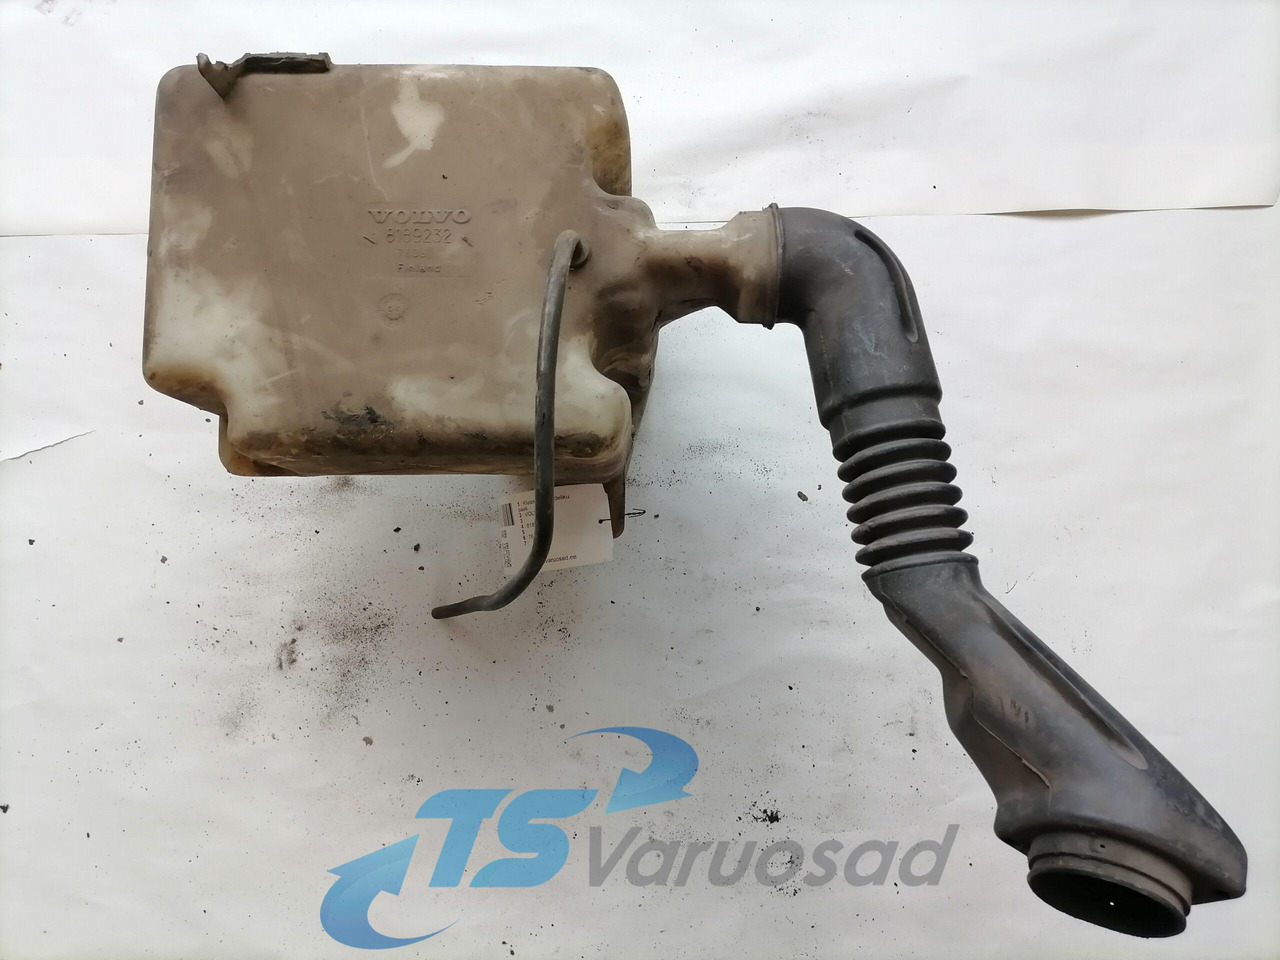 Tergicristallo per Camion Volvo Windscreen washer fluid tank 8189232: foto 2